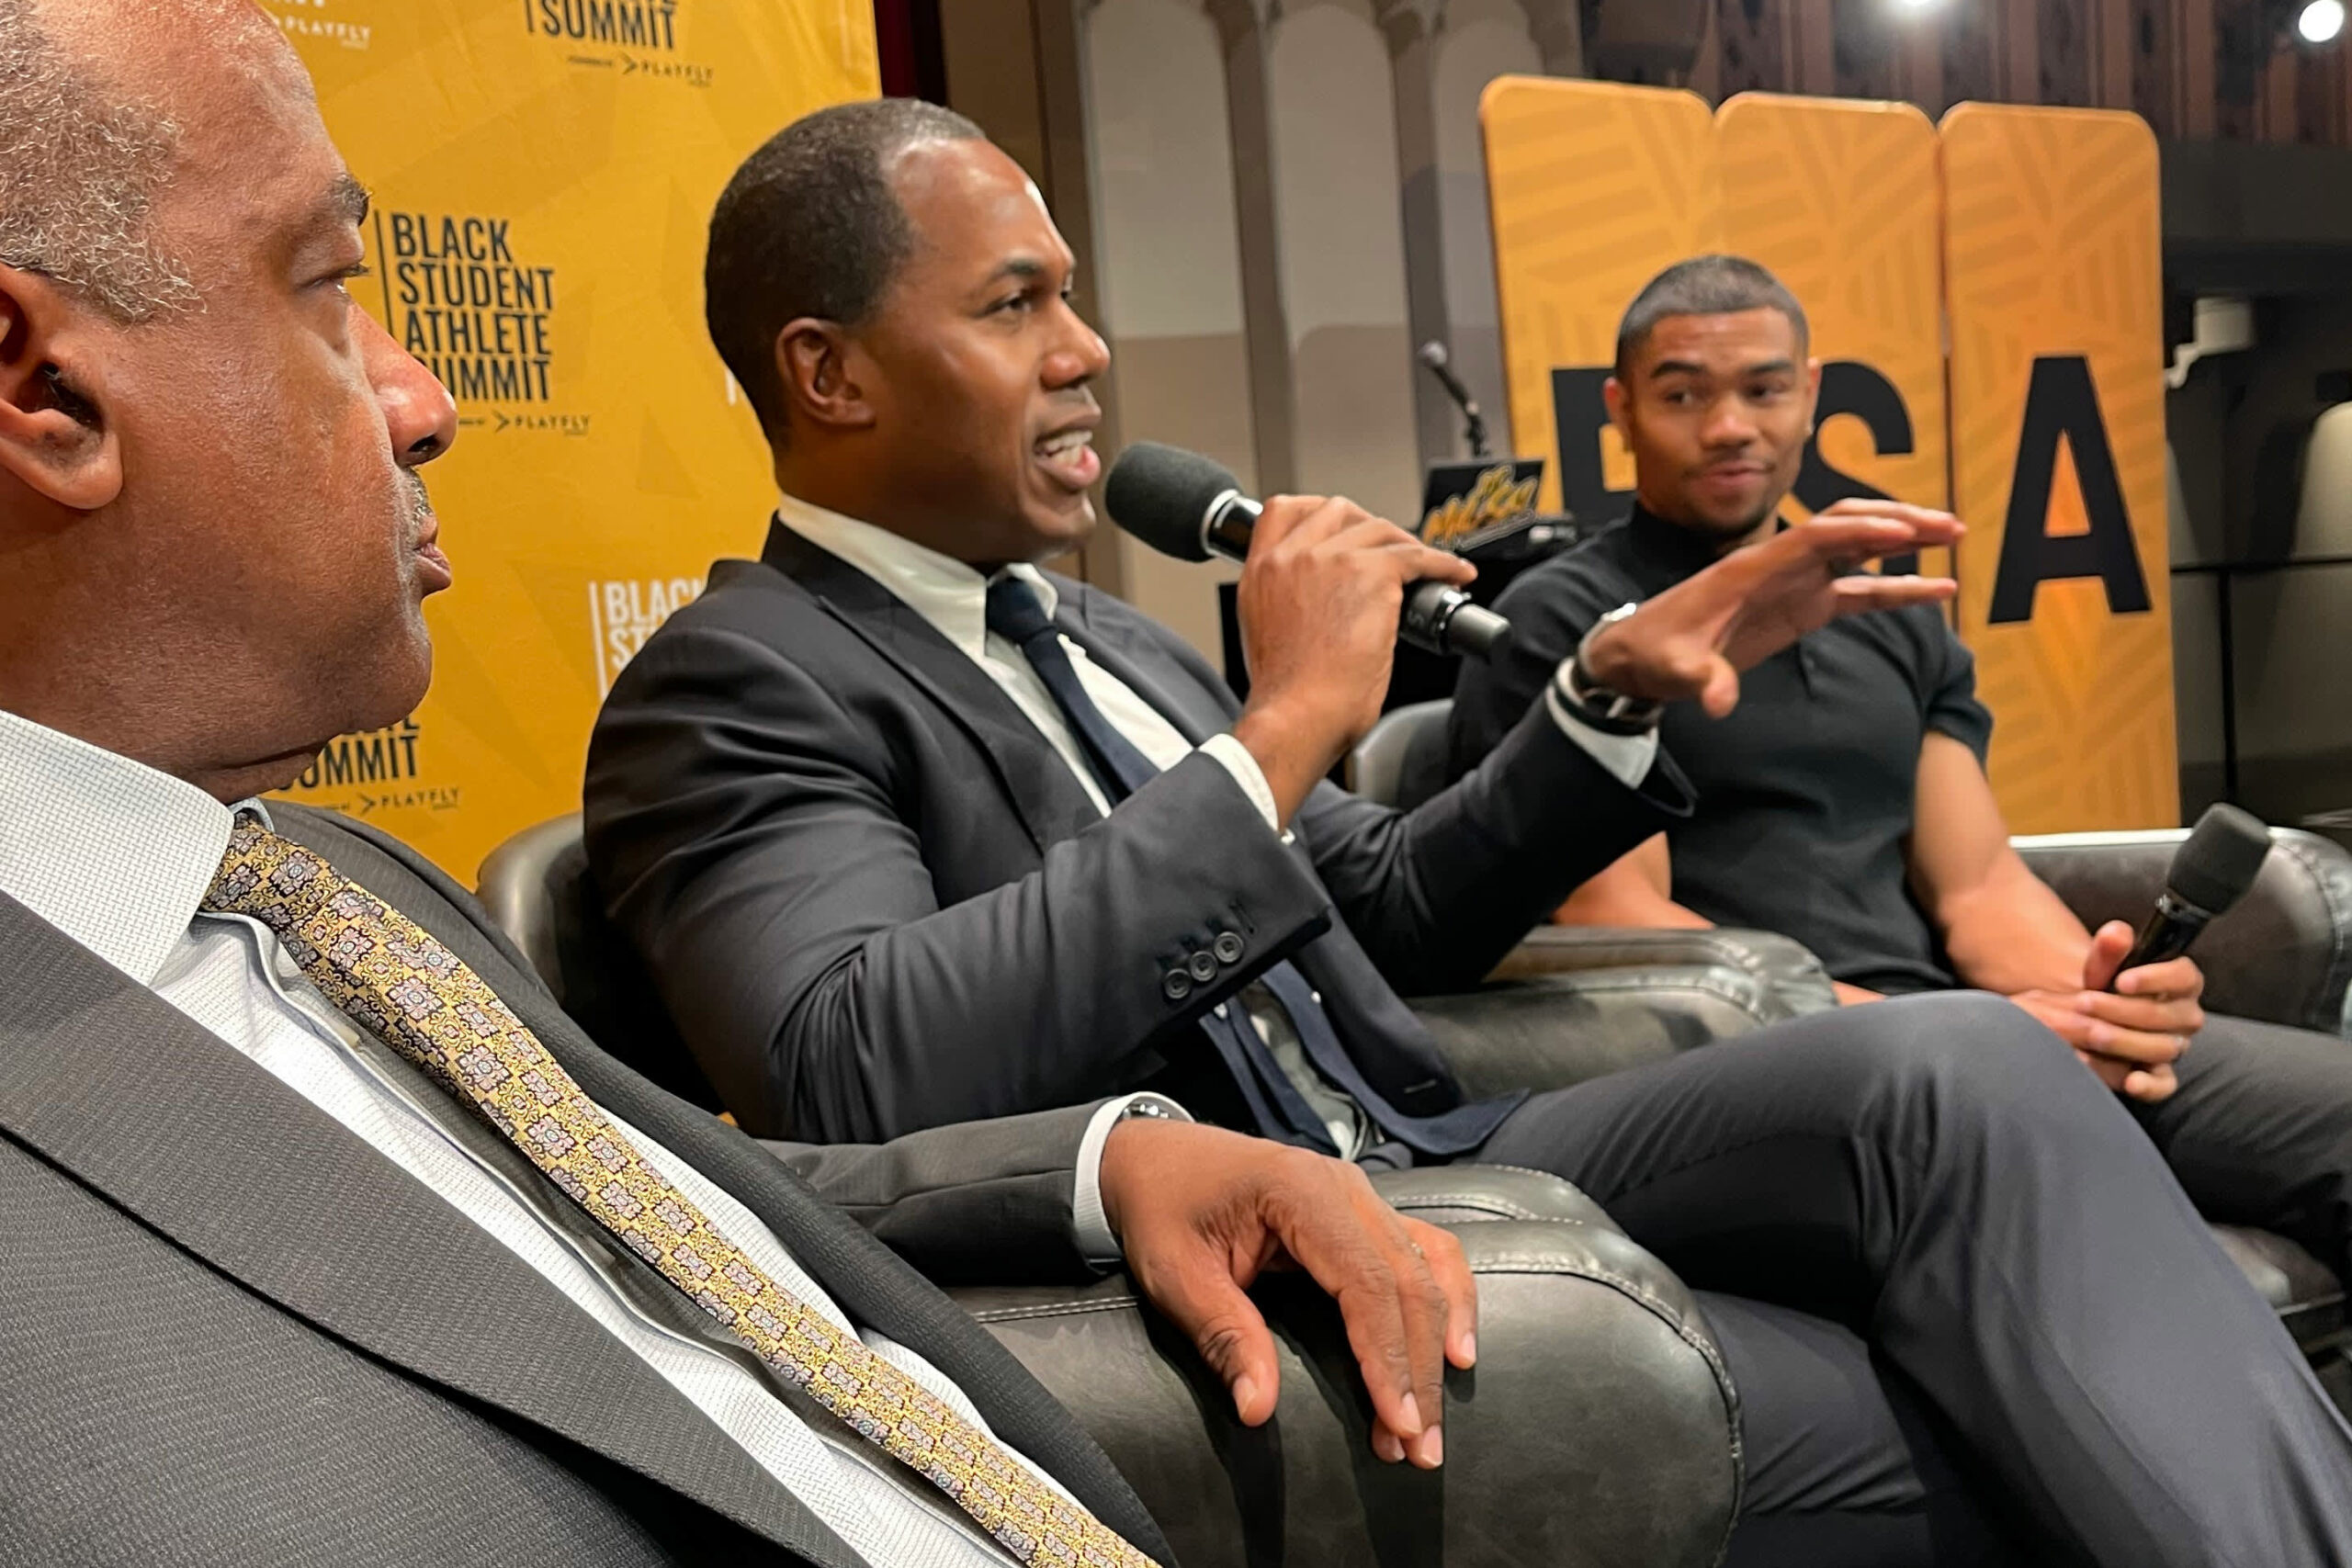 Hvorfor store kommercielle ejendomsfirmaer samler ressourcer for at rekruttere sorte studerende-atleter